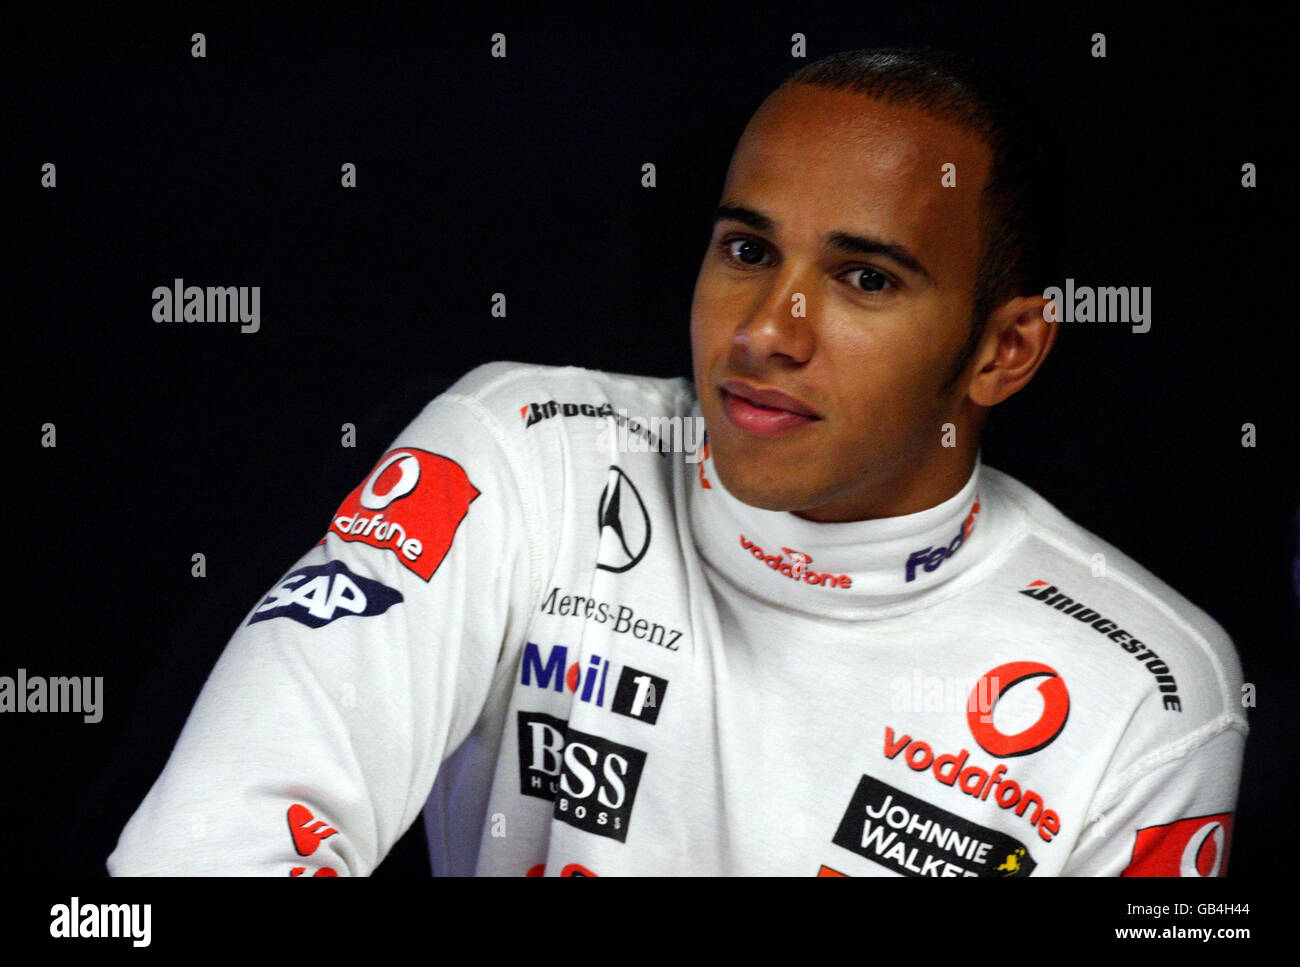 Le Lewis Hamilton, en Grande-Bretagne, se trouve dans le garage pendant une séance d'entraînement à Monza, en Italie. Banque D'Images